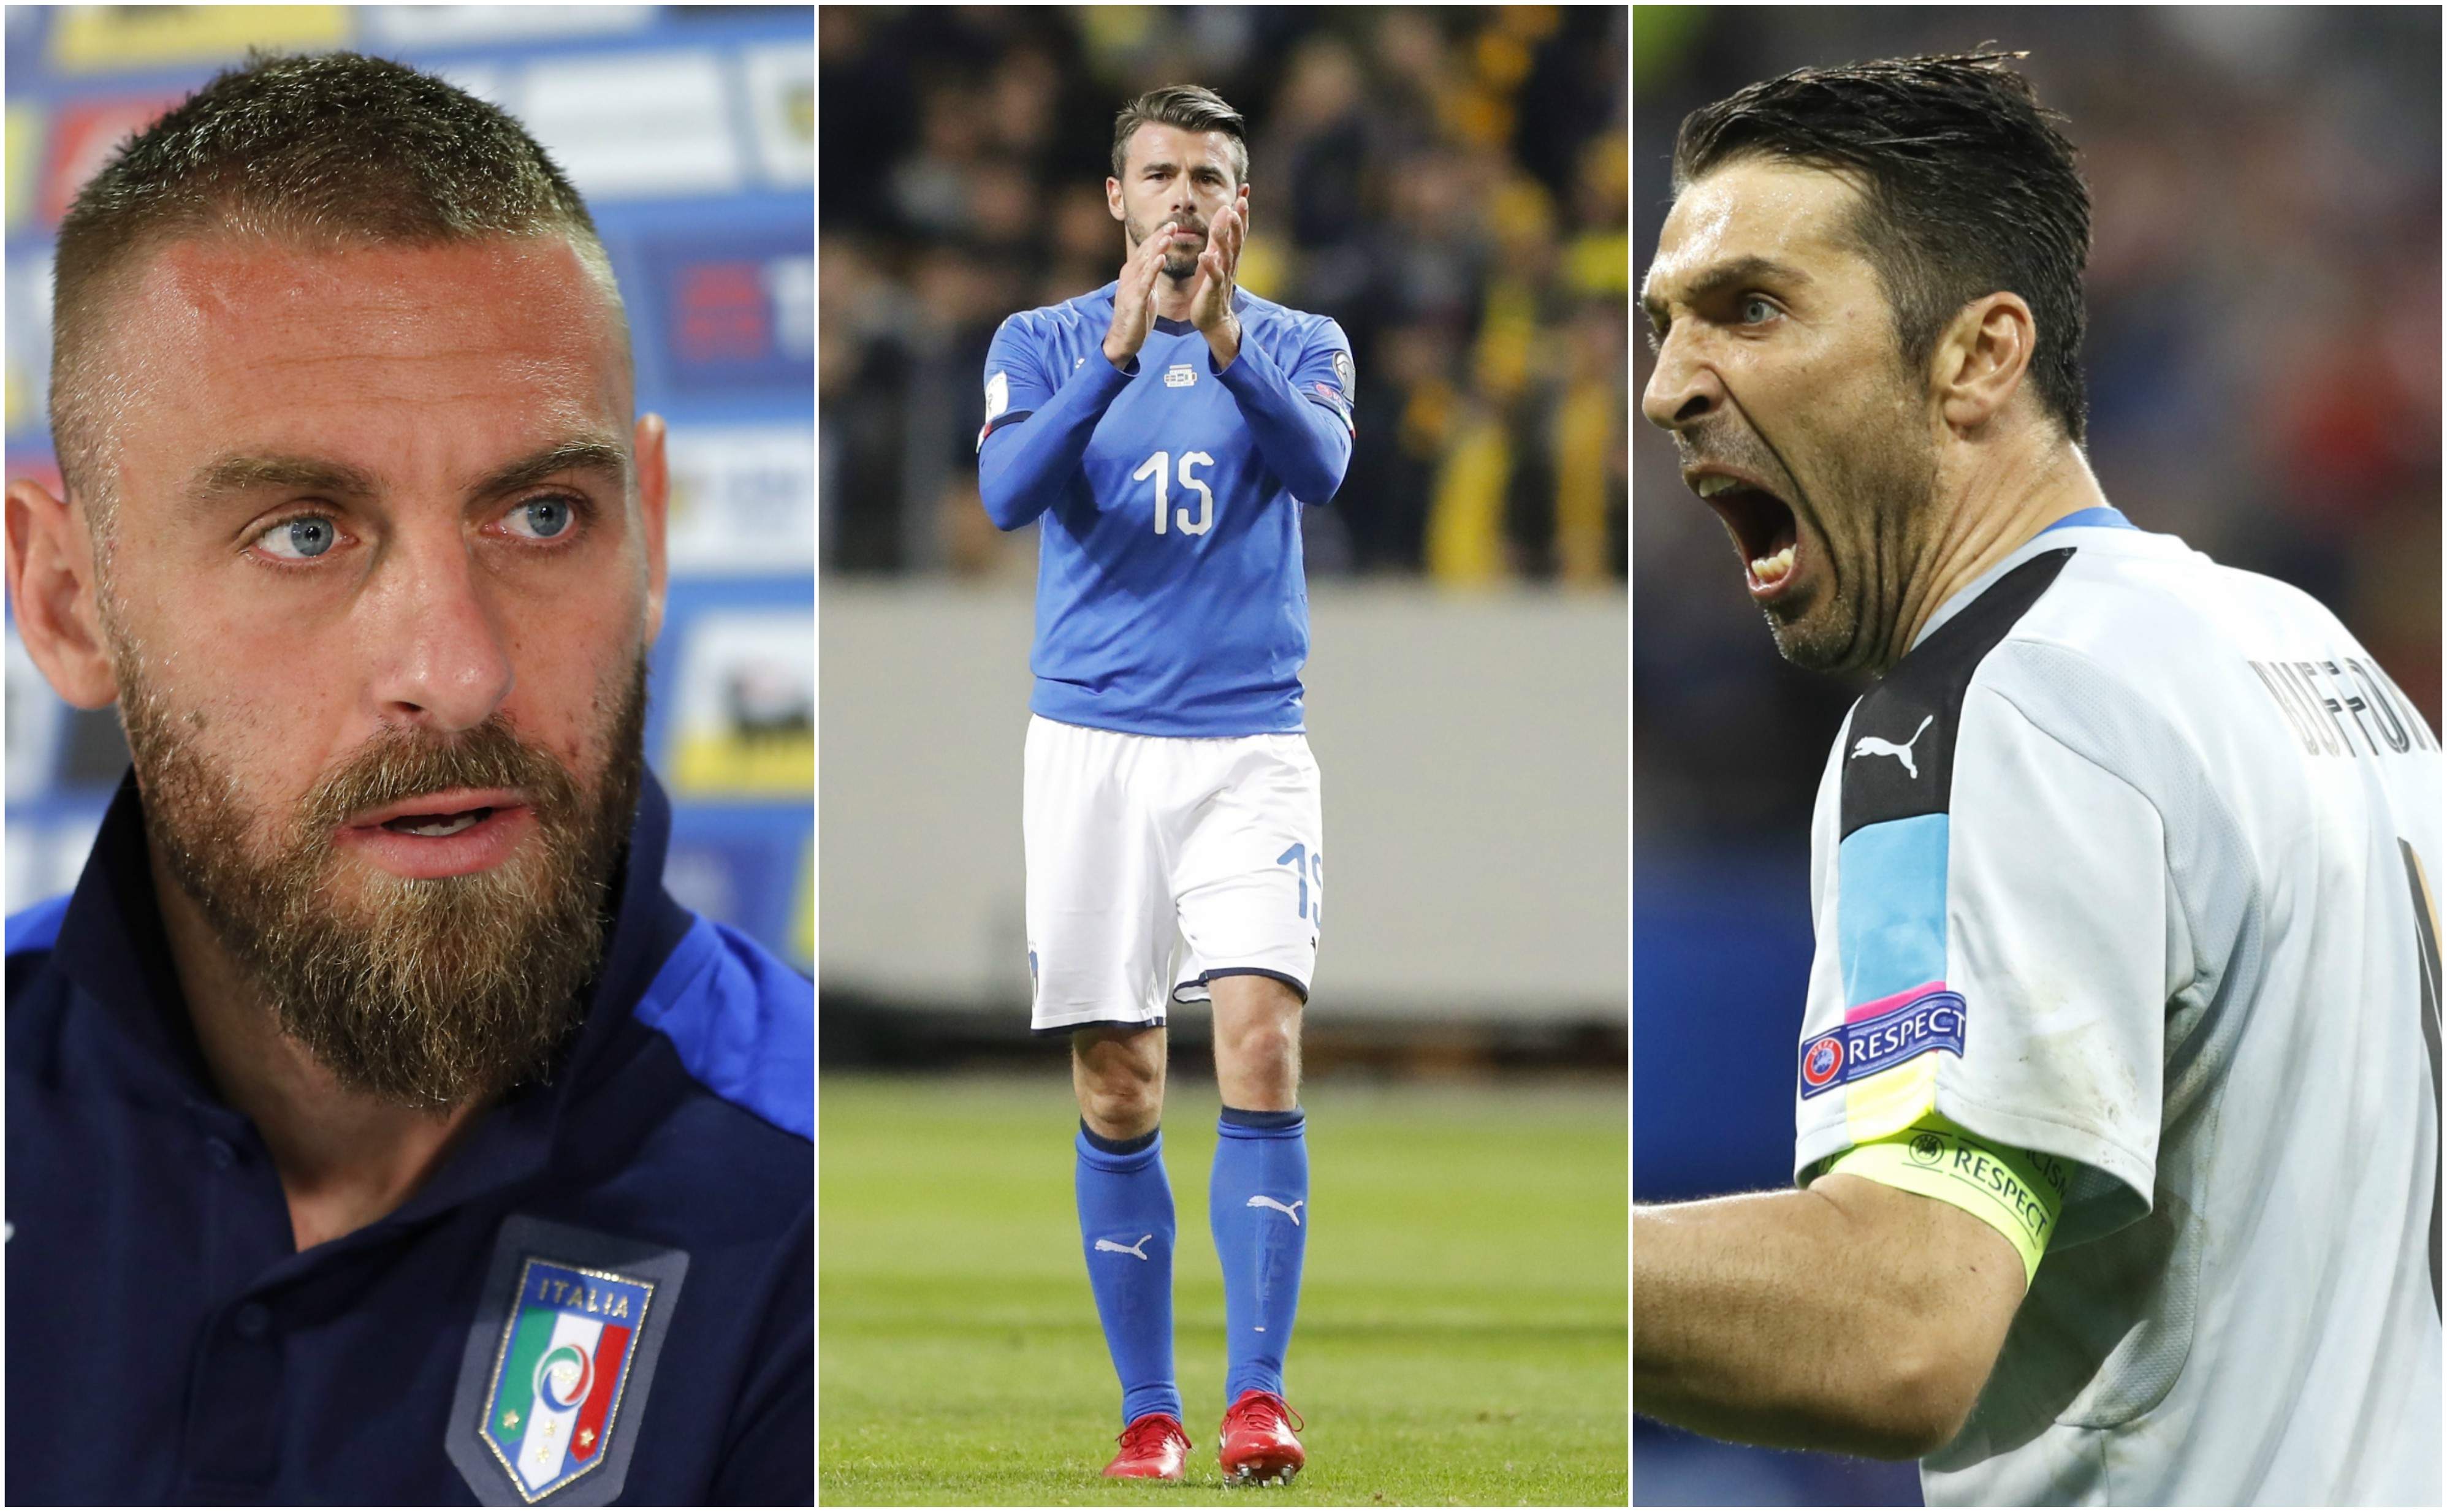 Tiếp bước Buffon, 2 sao bự tuyển Ý tuyên bố giải nghệ